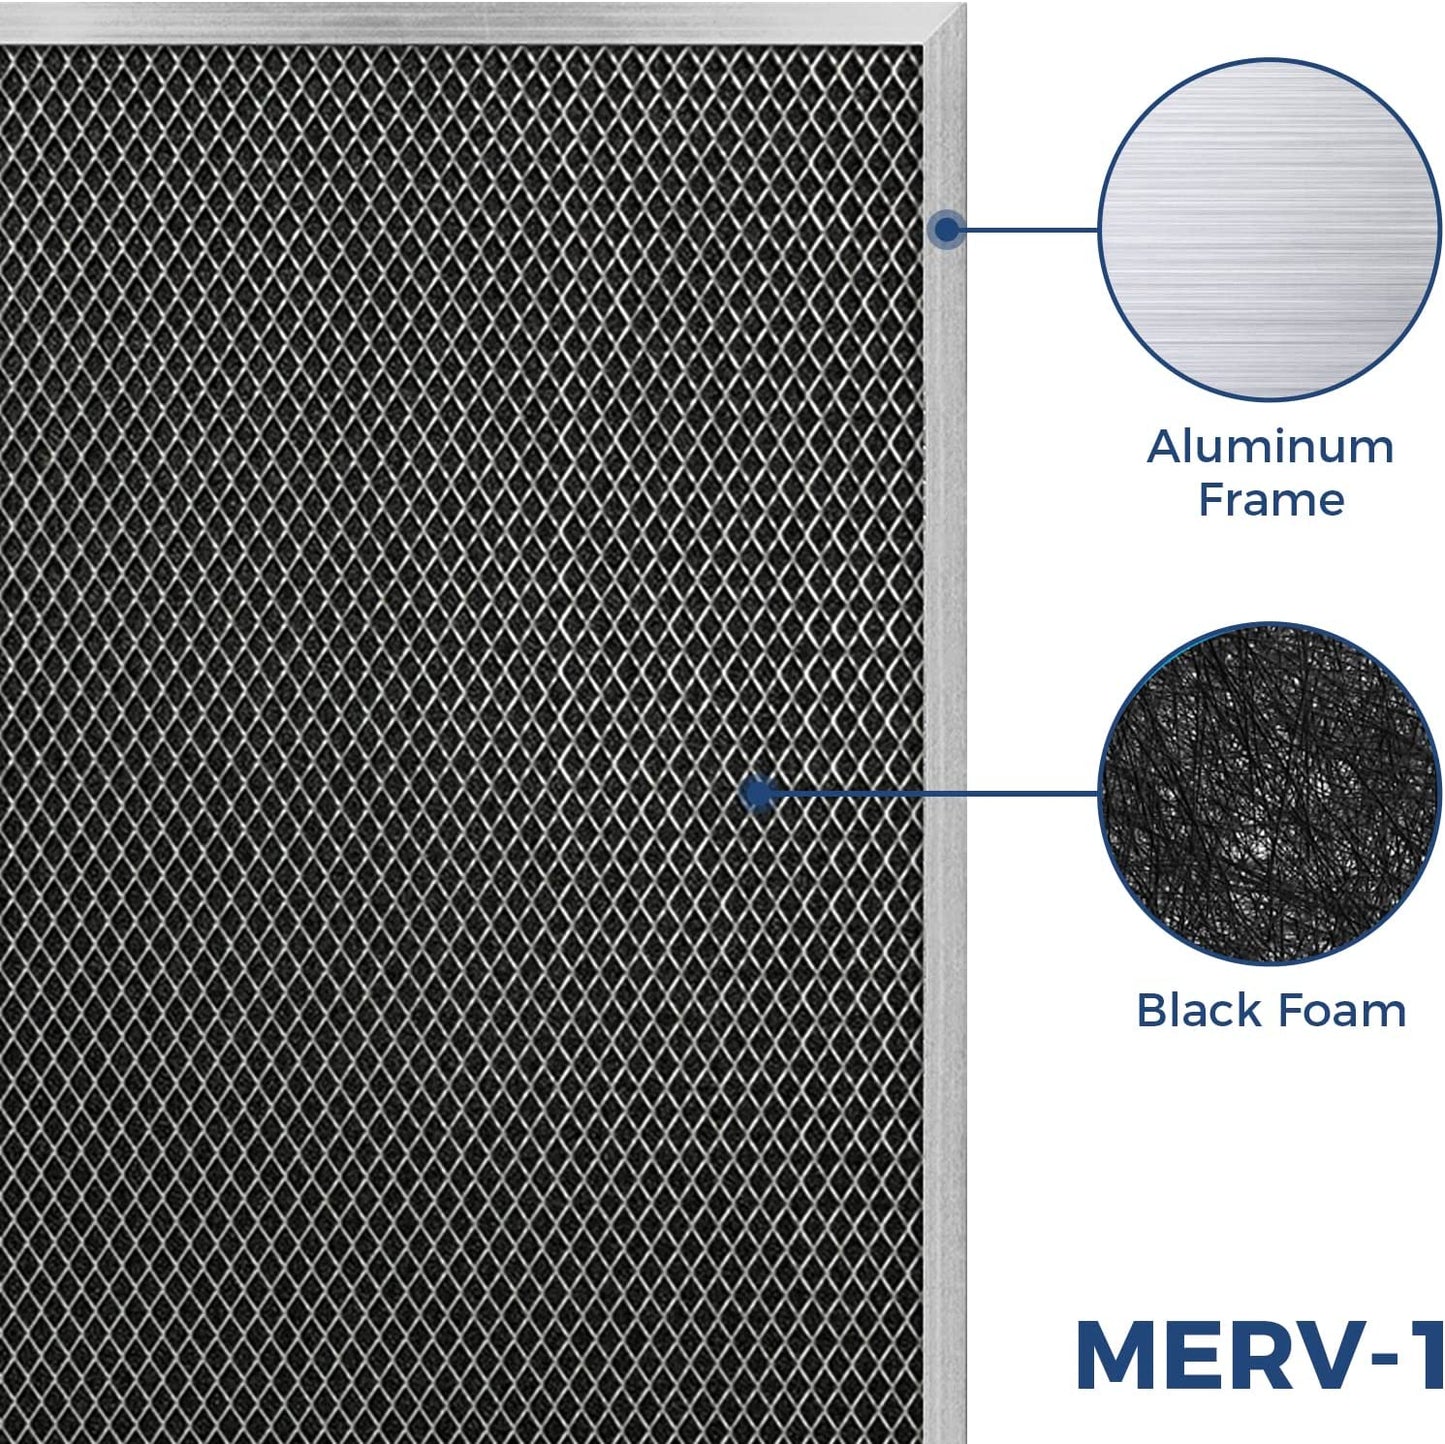 AlorAir® 3-Pack MERV-1 Filter for Sentinel HDi100, HDi120